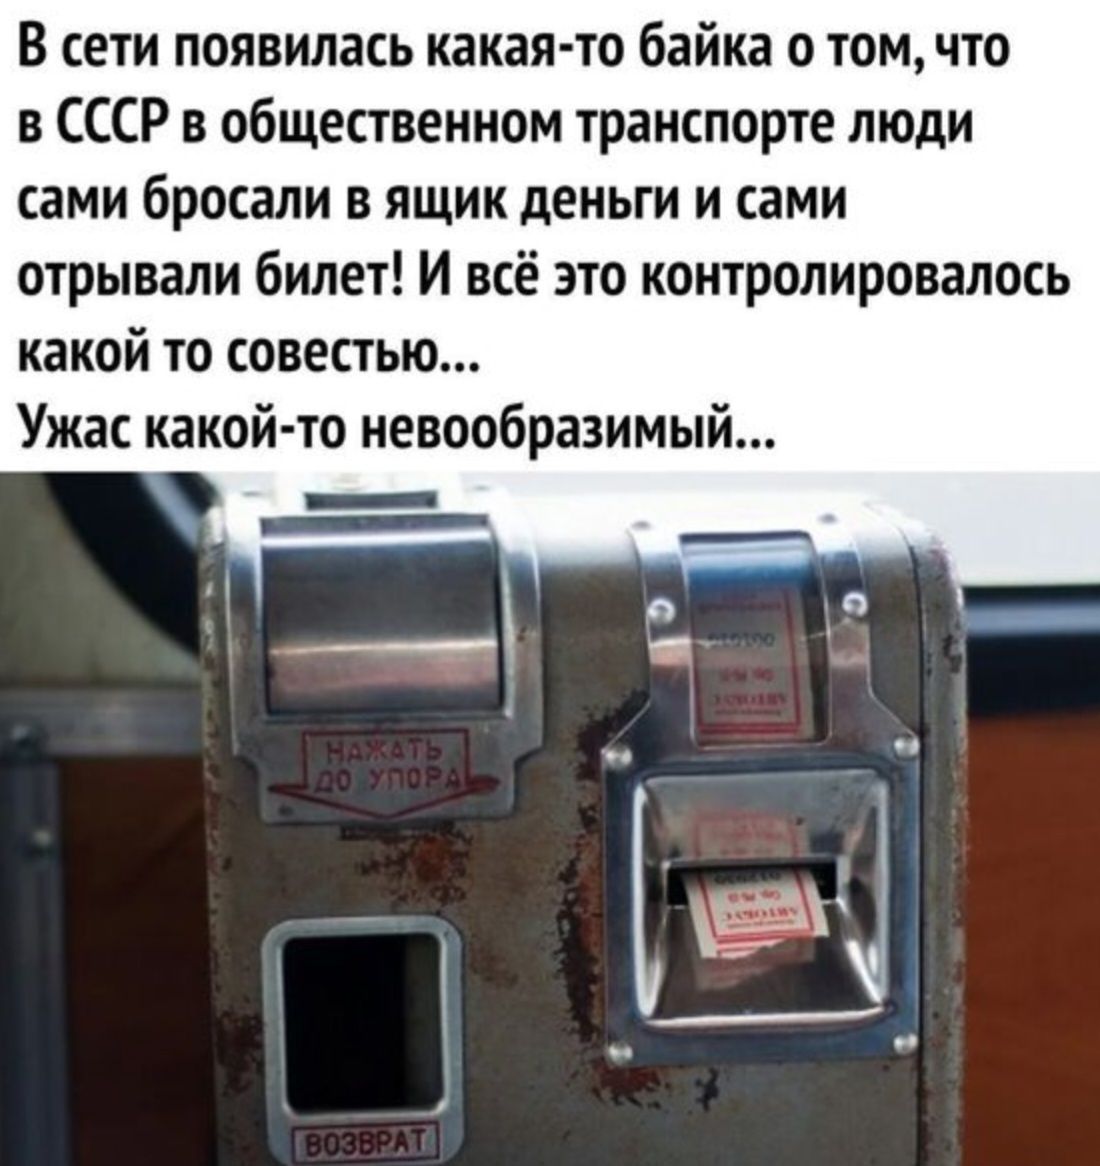 В сети появилась какая то байка о том что в СССР в общественном транспорте люди сами бросали в ящик деньги и сами отрывали билет И всё это контролировалось какой то совестью Ужас какой то иевообразимы